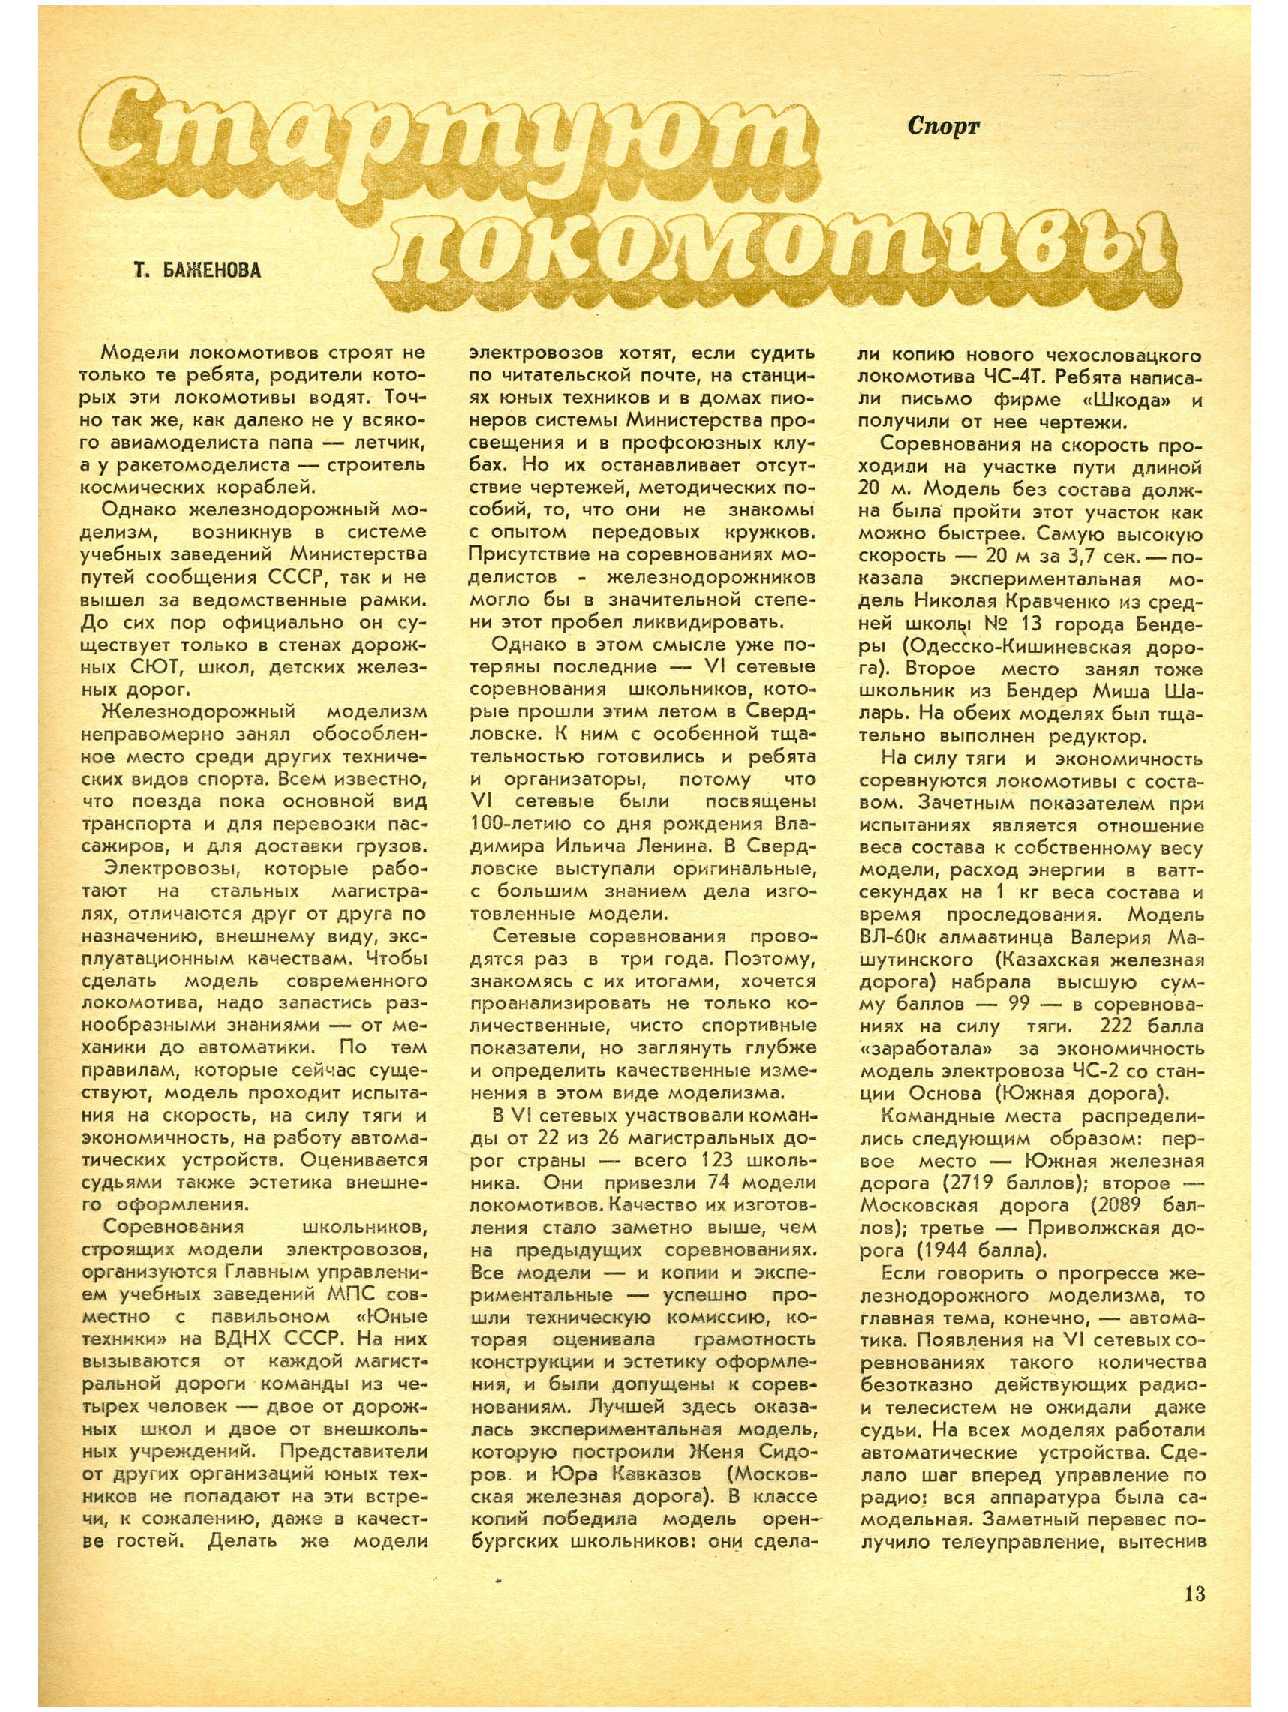 МК 11, 1970, 13 c.